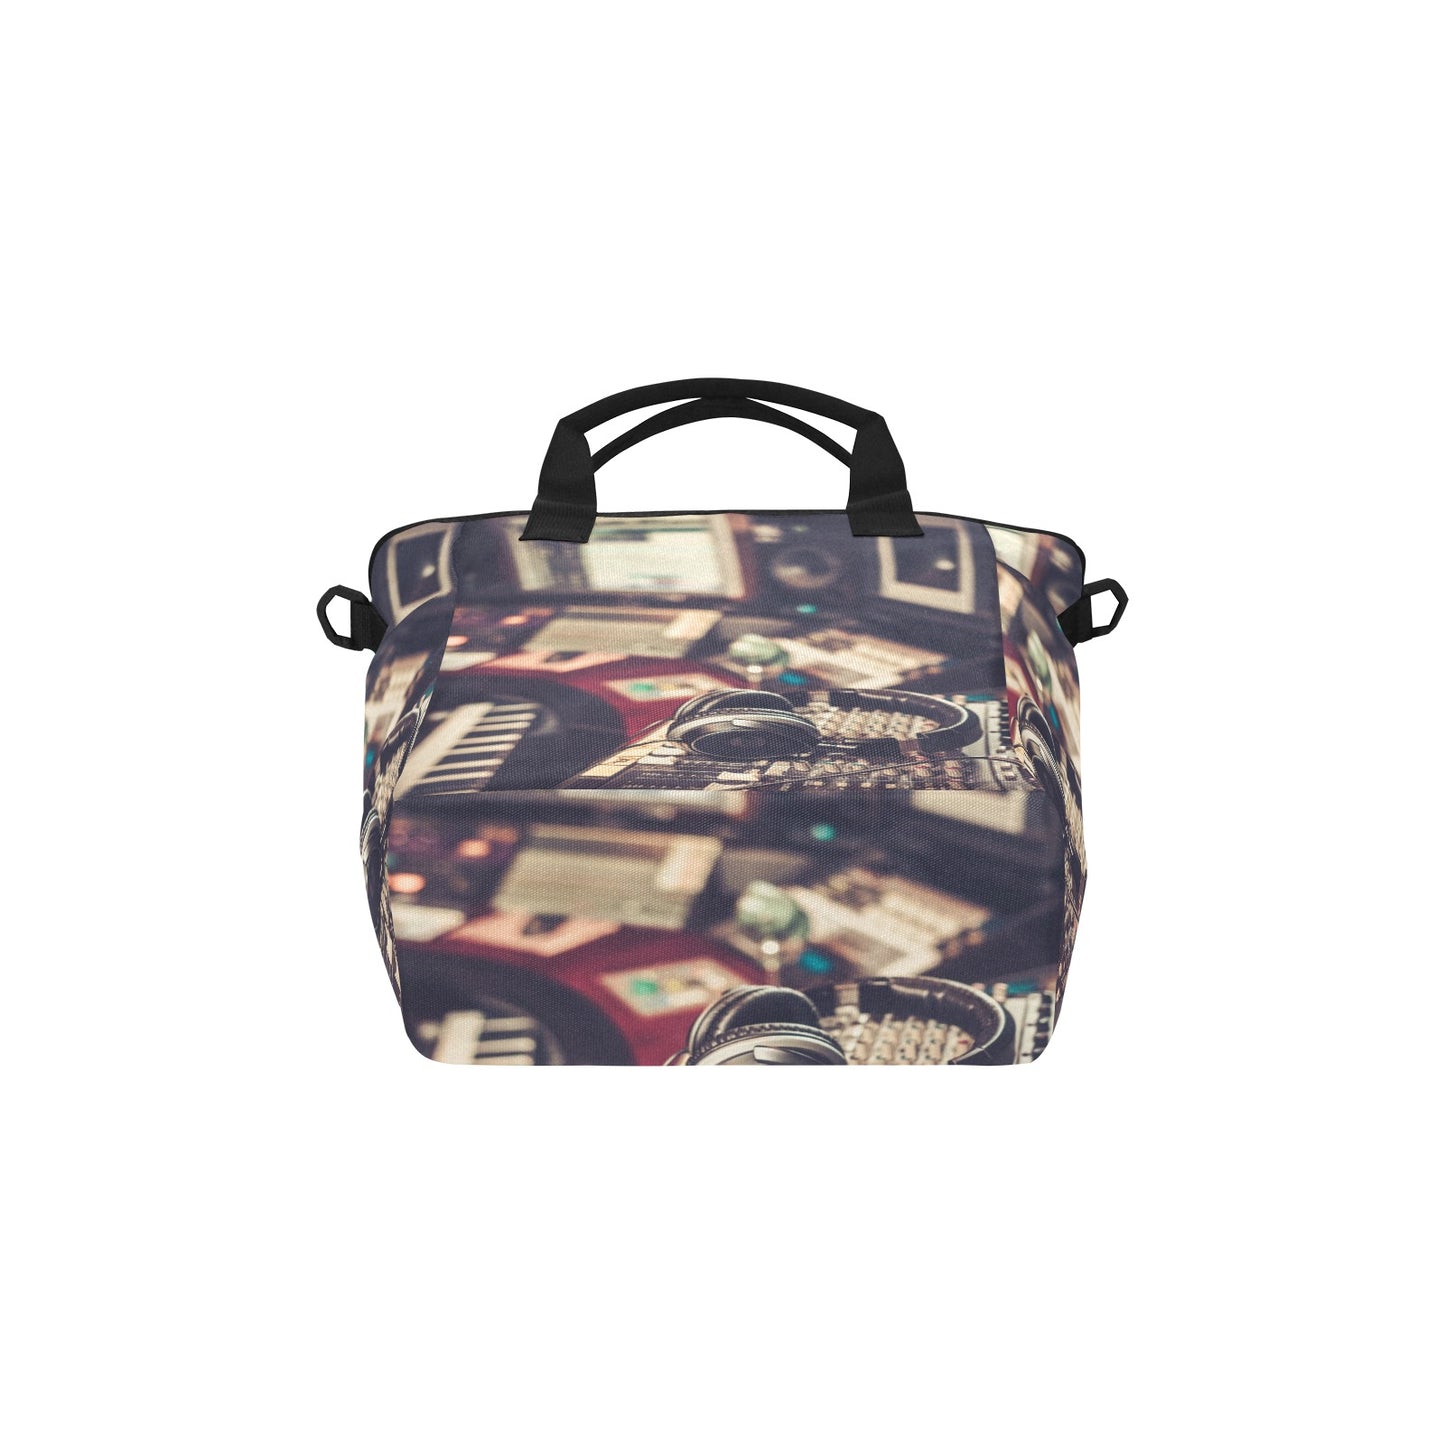 Sound Desk - Tote Bag with Shoulder Strap Nylon Tote Bag